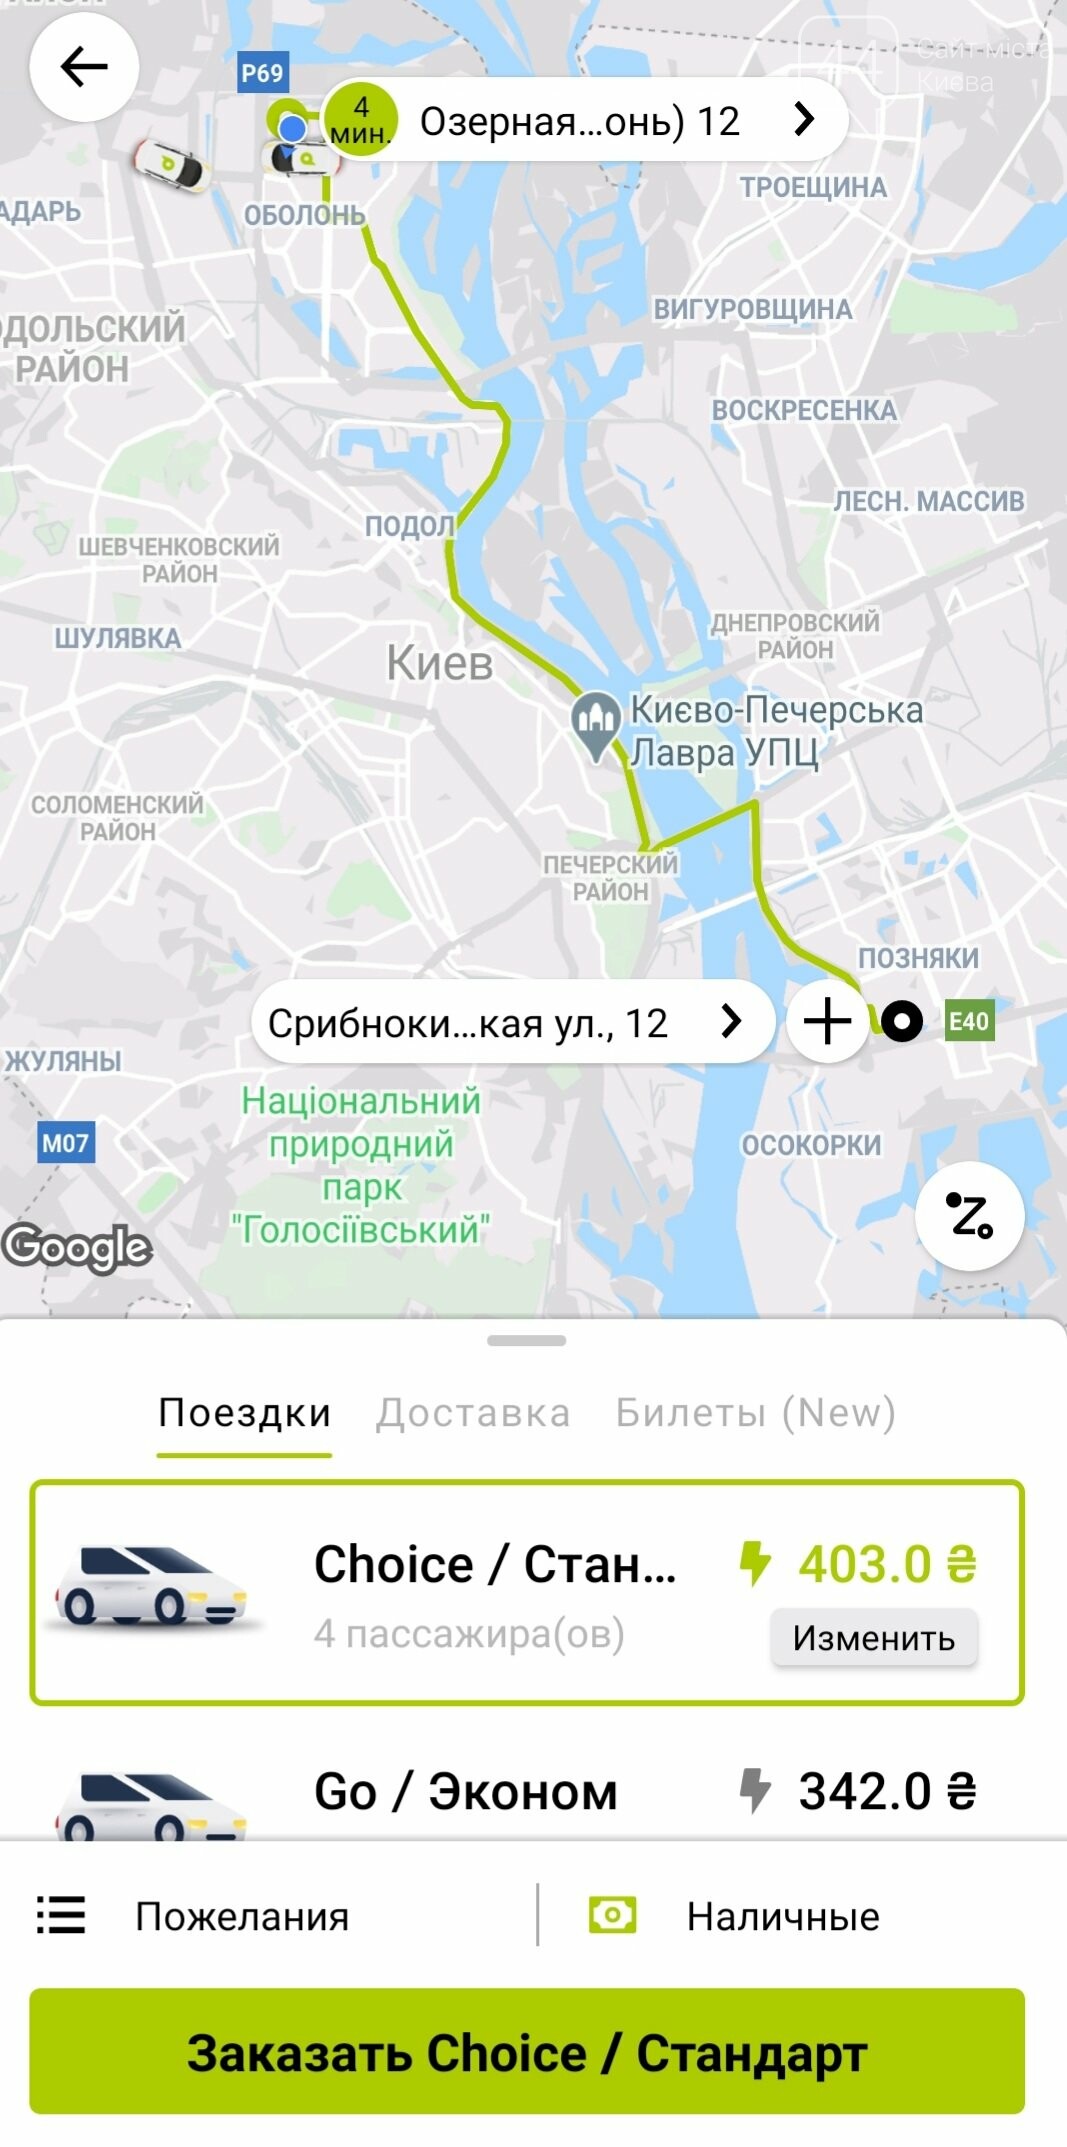 Второй день локдауна в Киеве: что с ценами на такси?